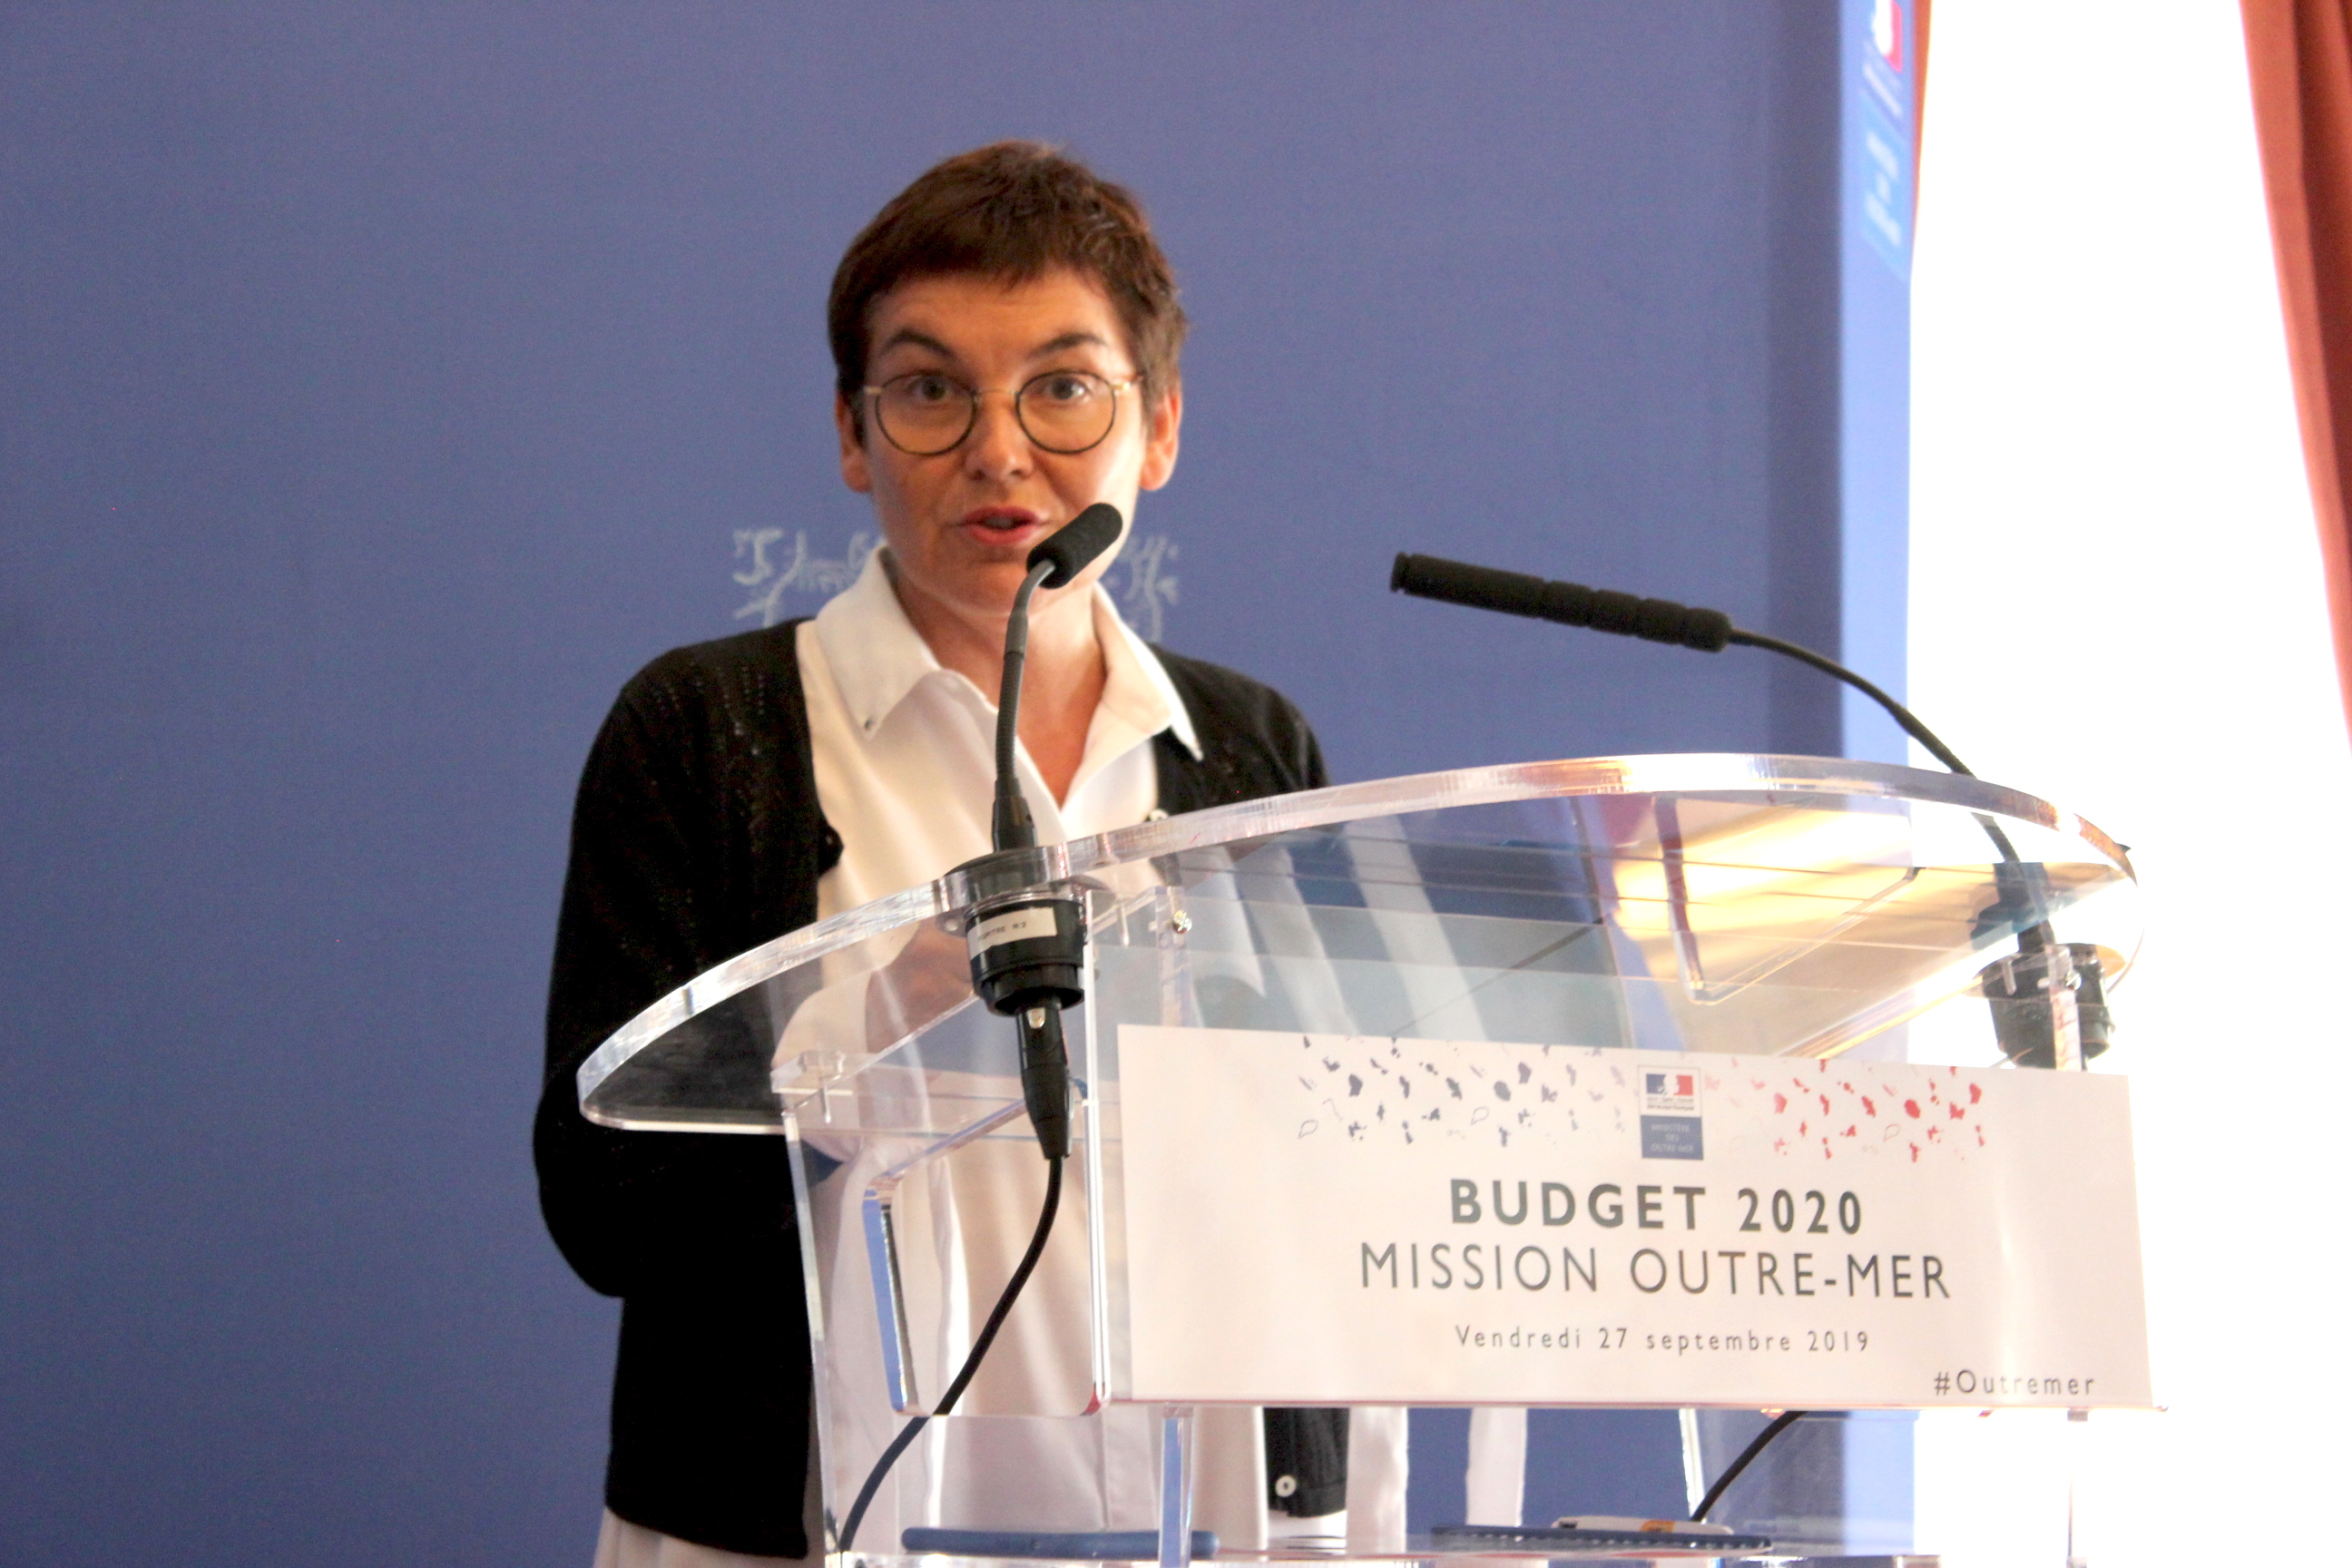 Budget Outre-mer 2020 : Un budget stable pour « maintenir l’ambition pour les Outre-mer »